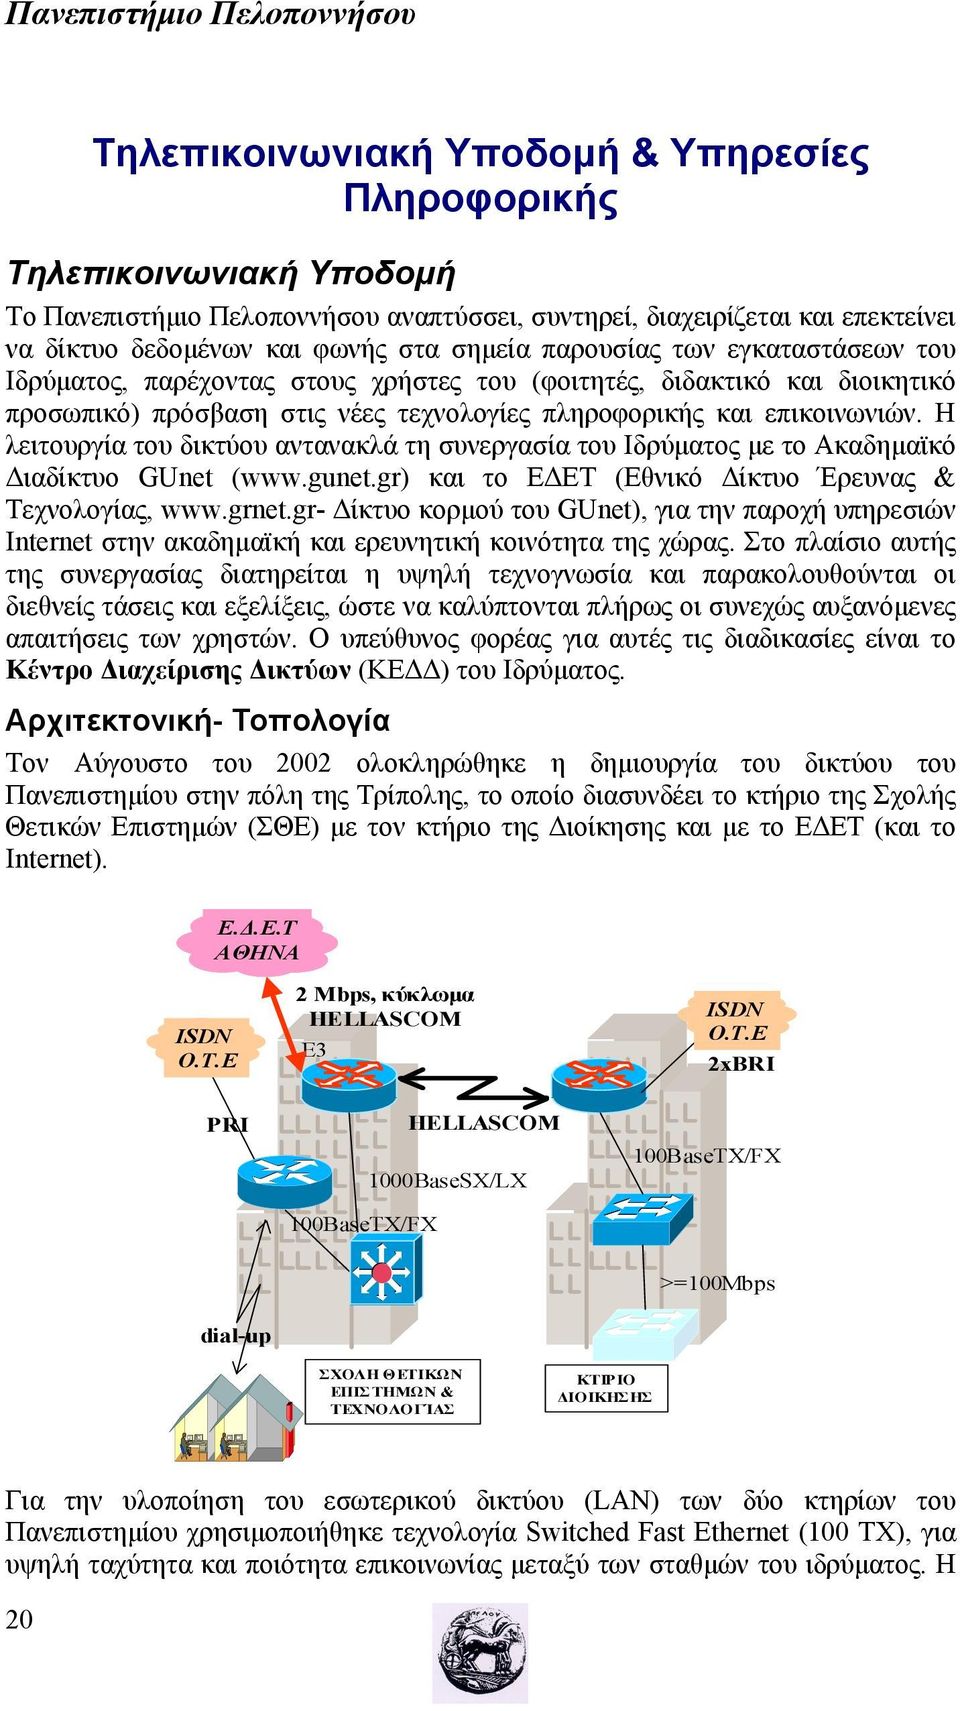 Η λειτουργία του δικτύου αντανακλά τη συνεργασία του Ιδρύματος με το Ακαδημαϊκό Διαδίκτυο GUnet (www.gunet.gr) και το ΕΔΕΤ (Εθνικό Δίκτυο Έρευνας & Τεχνολογίας, www.grnet.